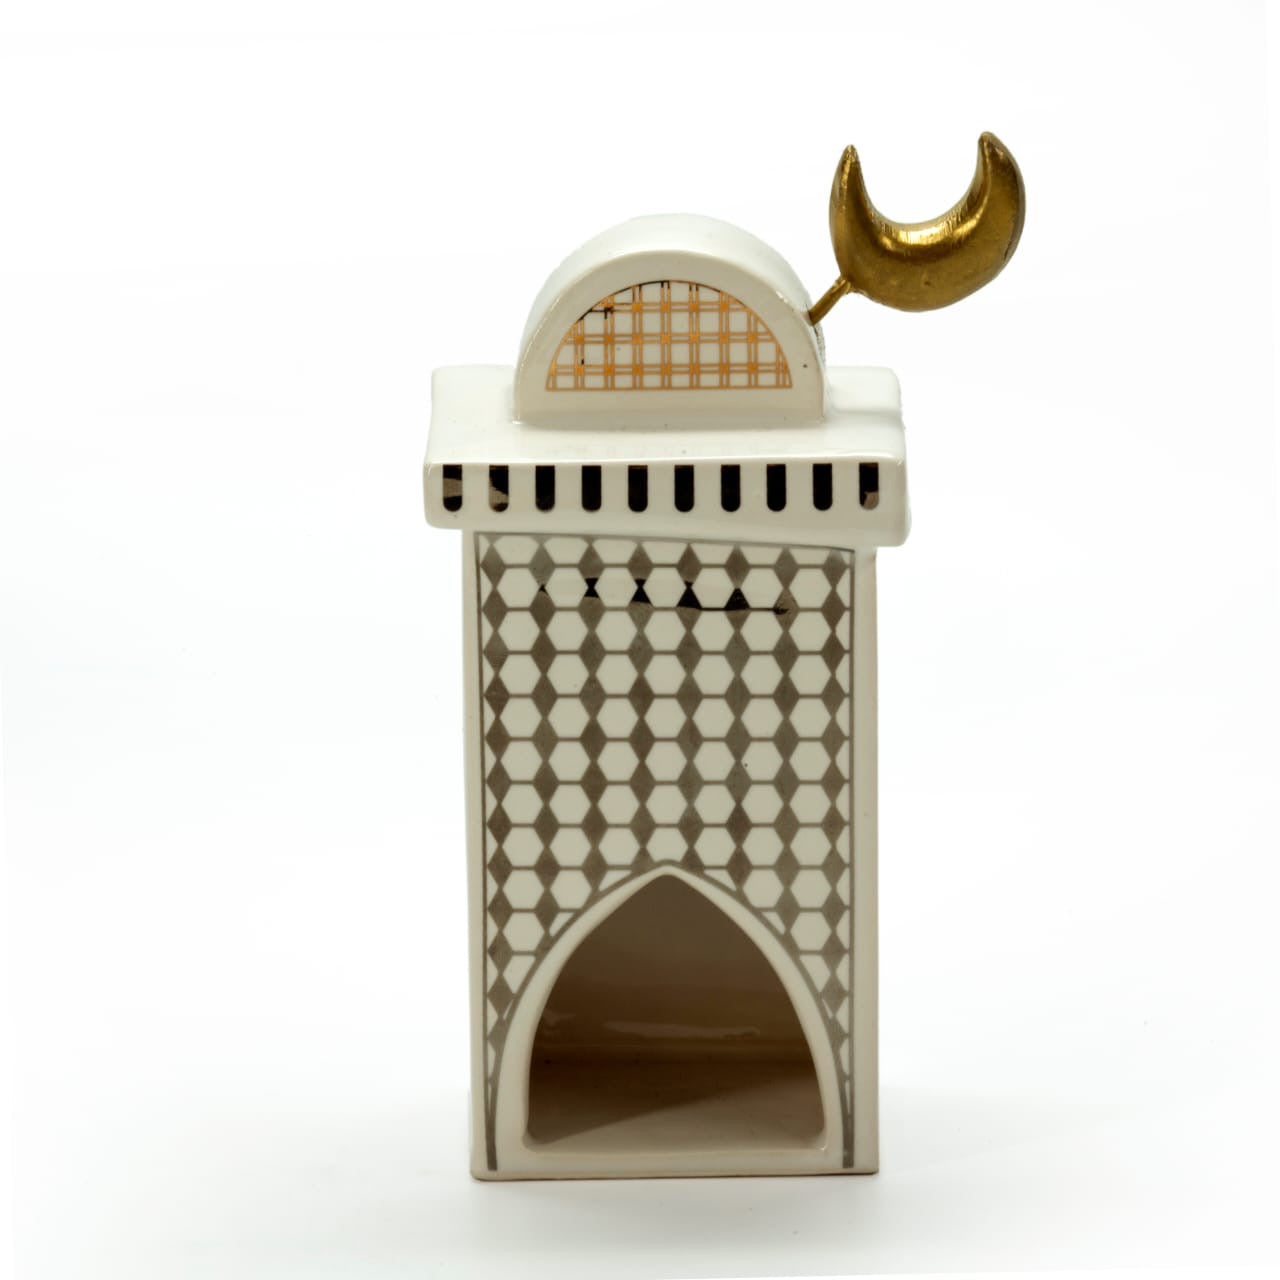 Ceramic minaret gold/silver - S/Minaret en céramique or/argent - S